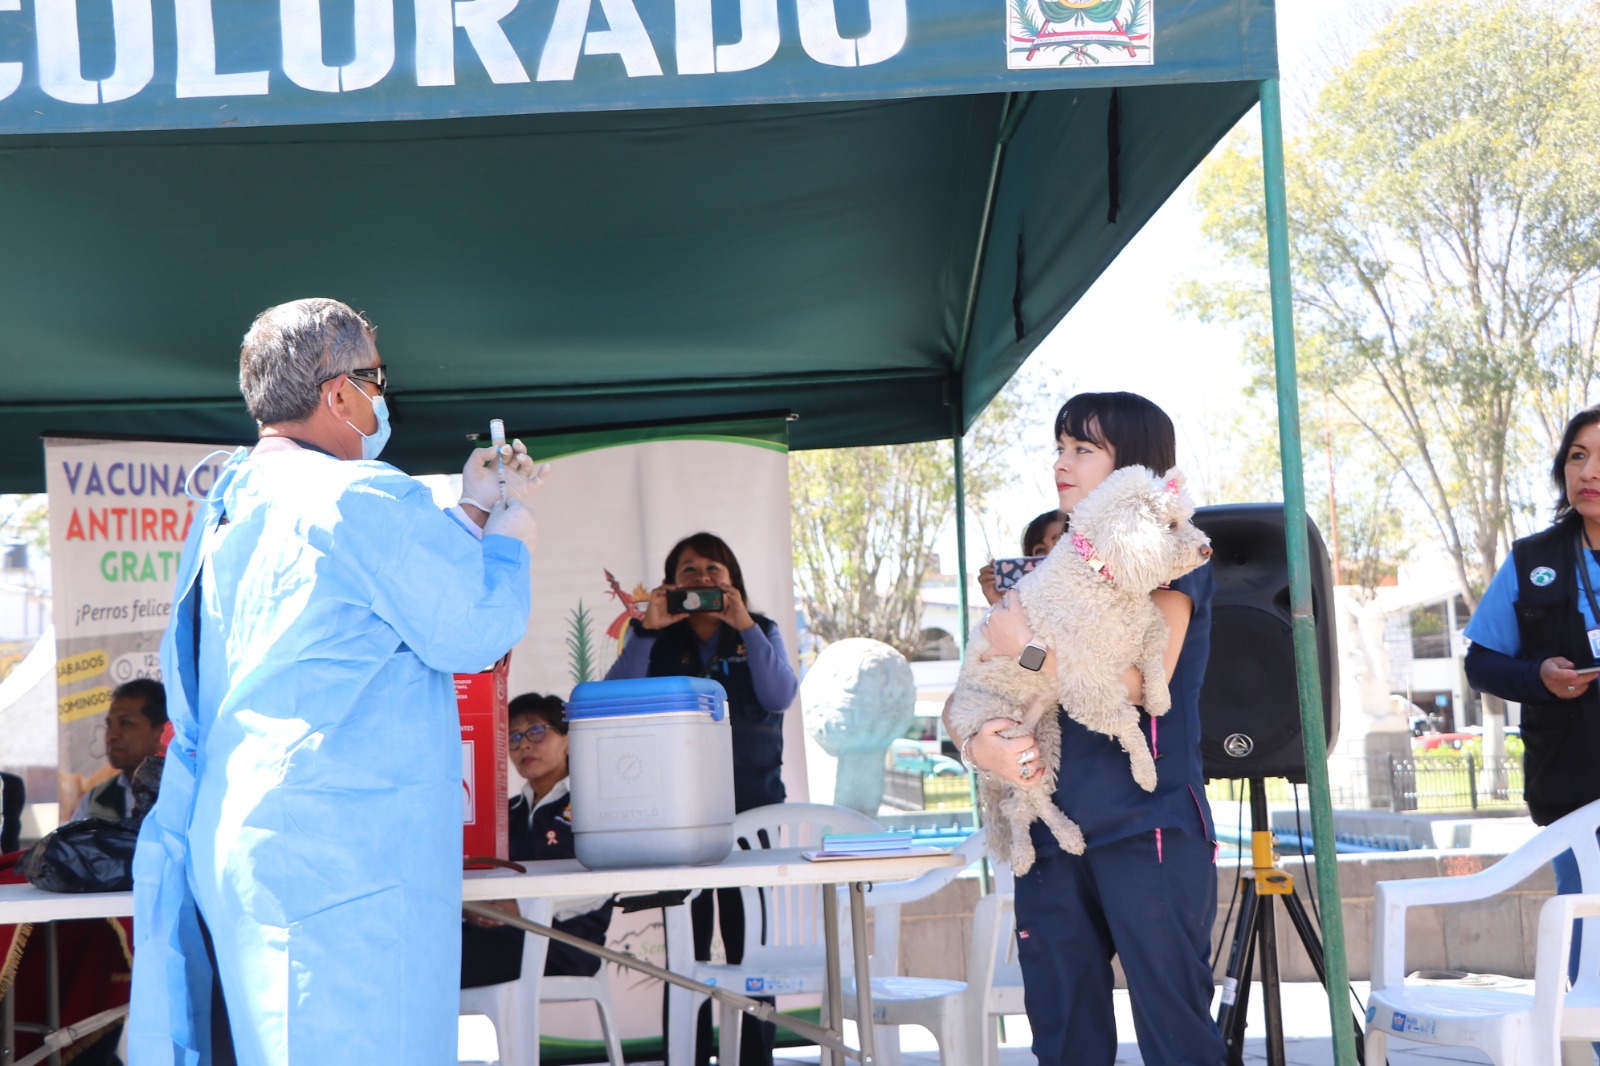 Buscarán inmunizar a más de 50 mil canes en campaña de Vacunación Antirrábica en el distrito de Cerro Colorado